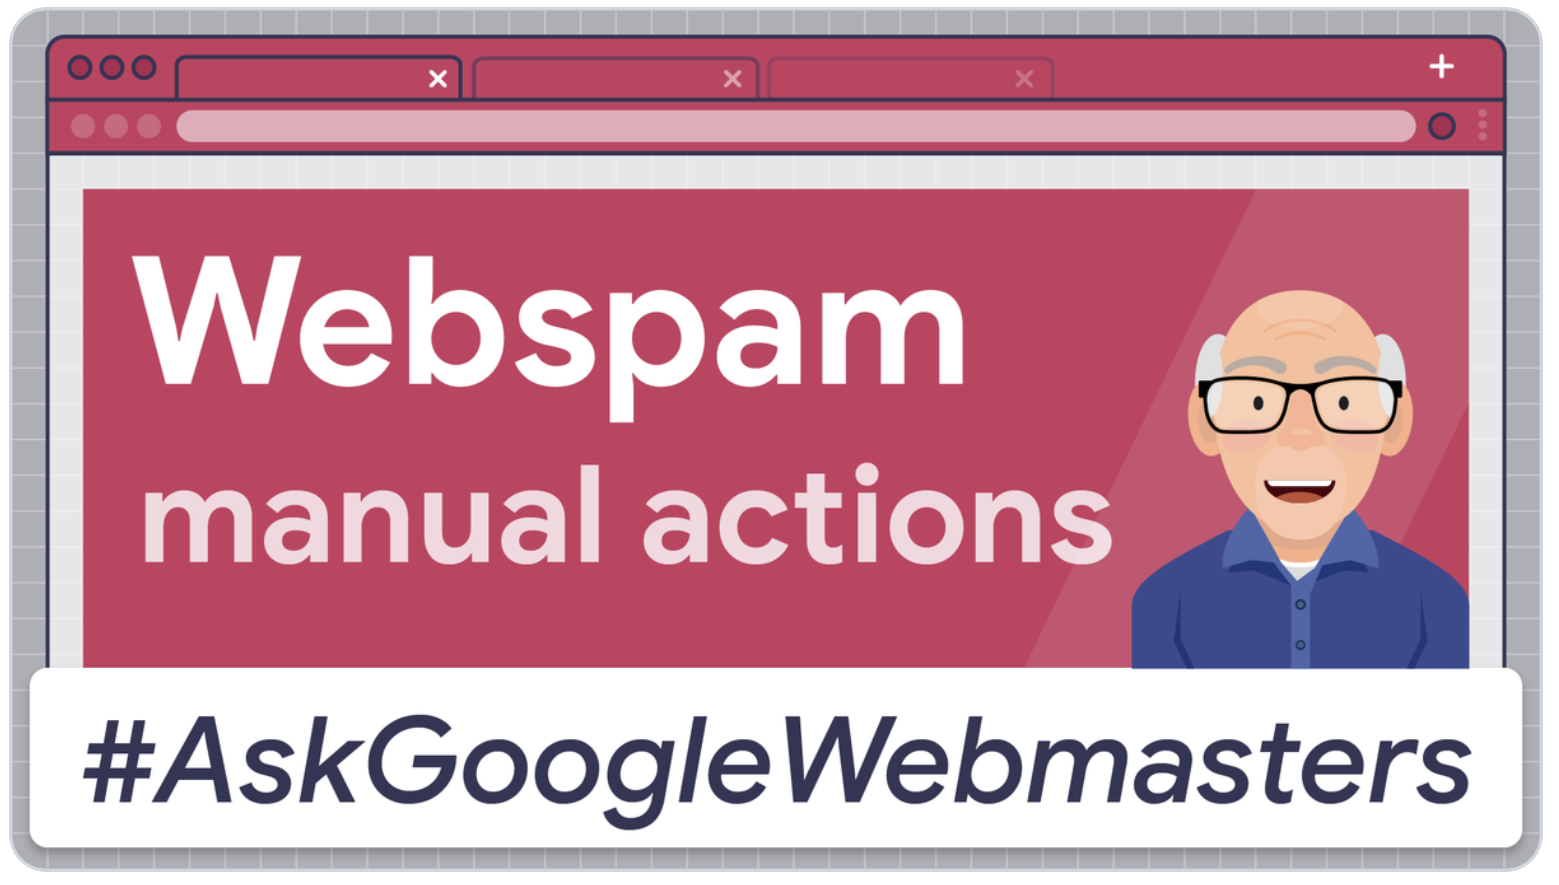 Ask Google Webmasters: Webspam